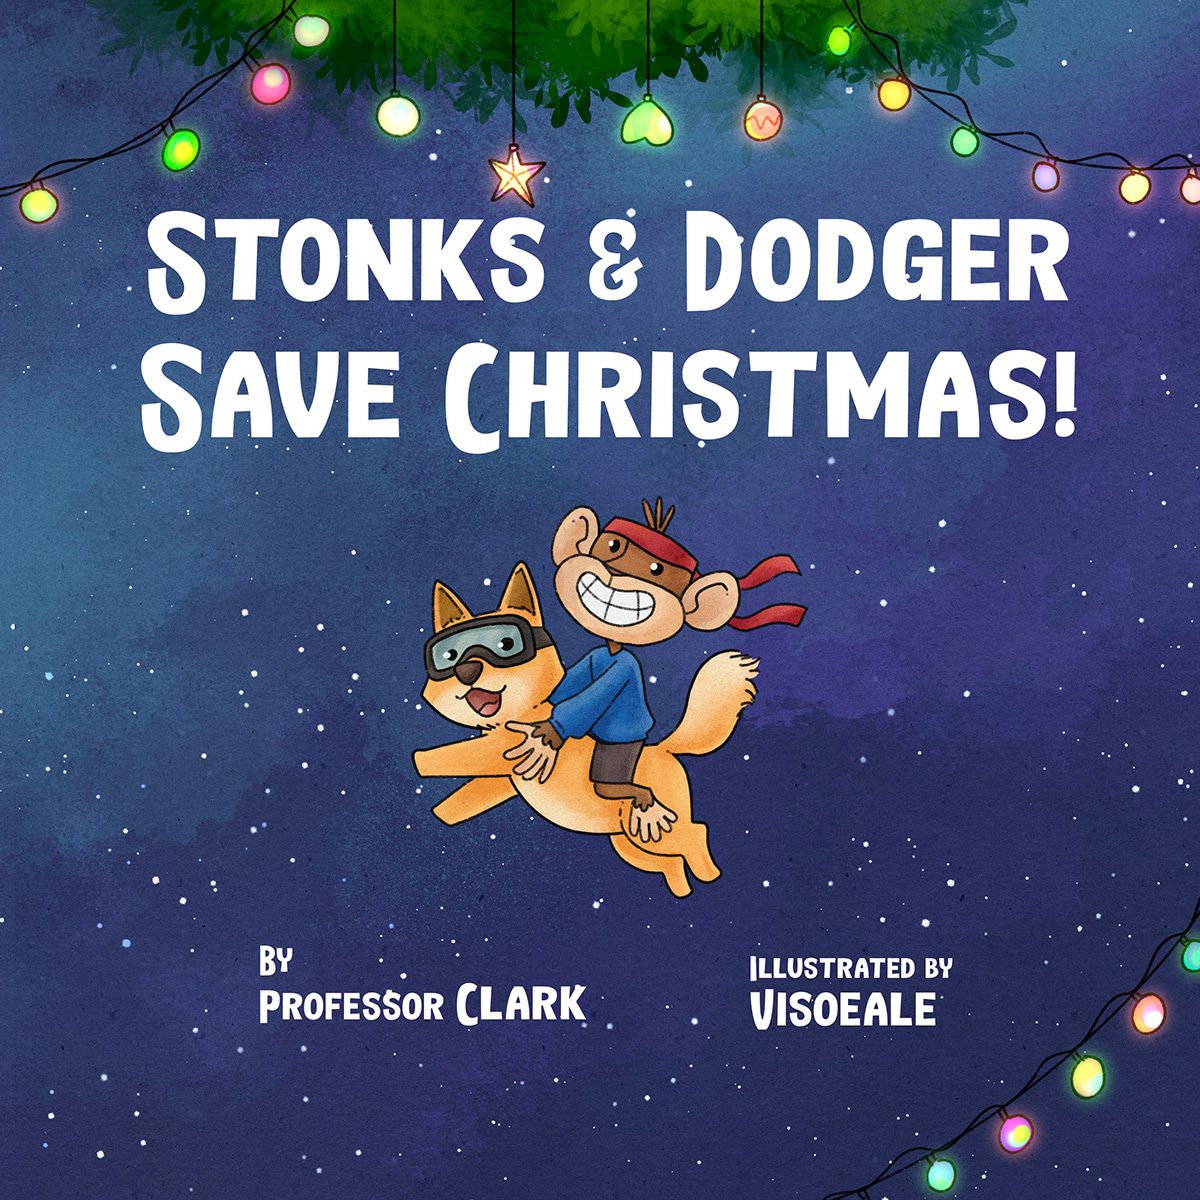 Stonks & Dodger Save Christmas!